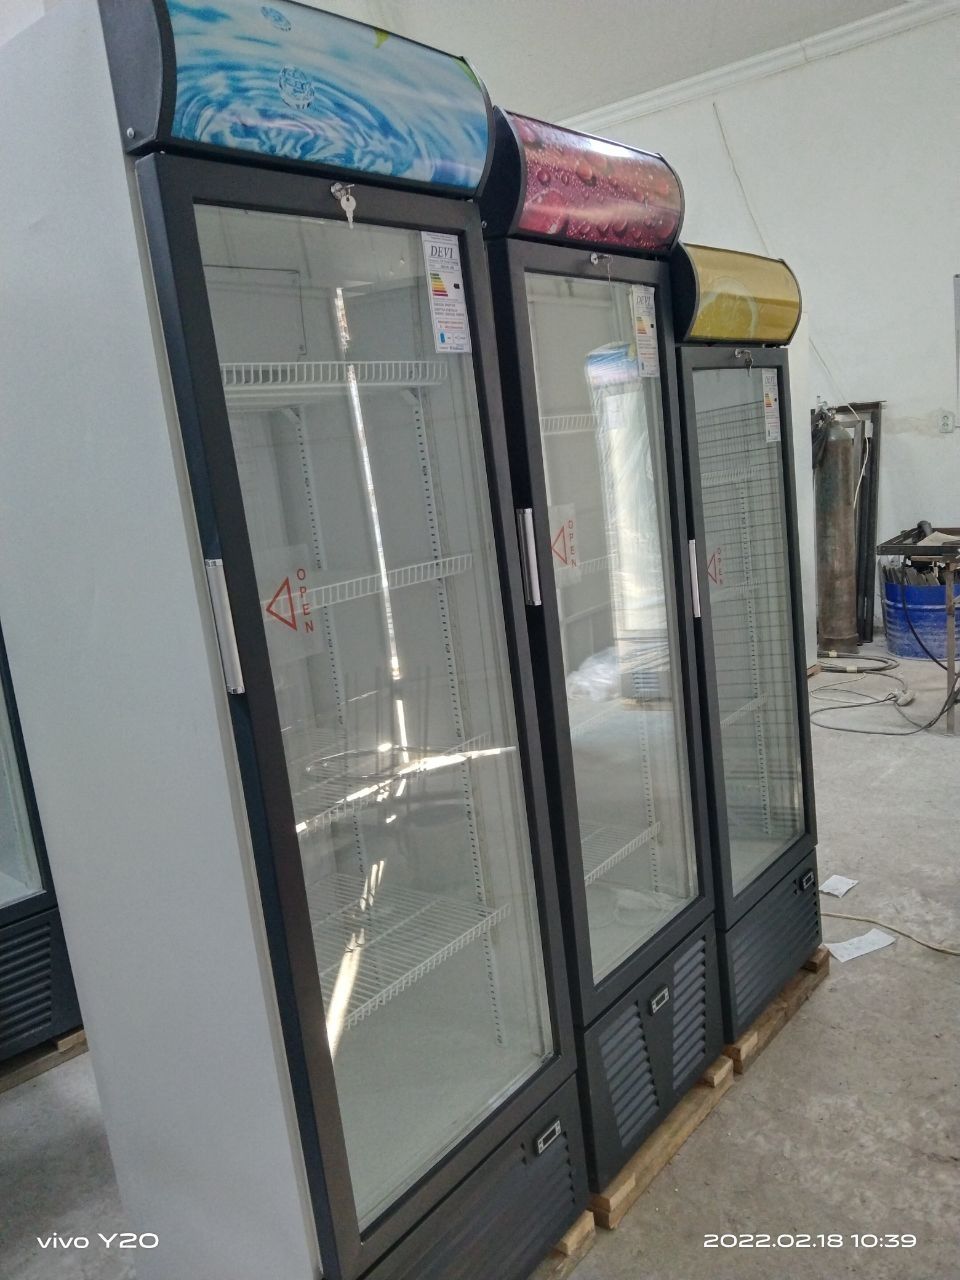 Новые заводской DEVI витринные холодильники с завода.